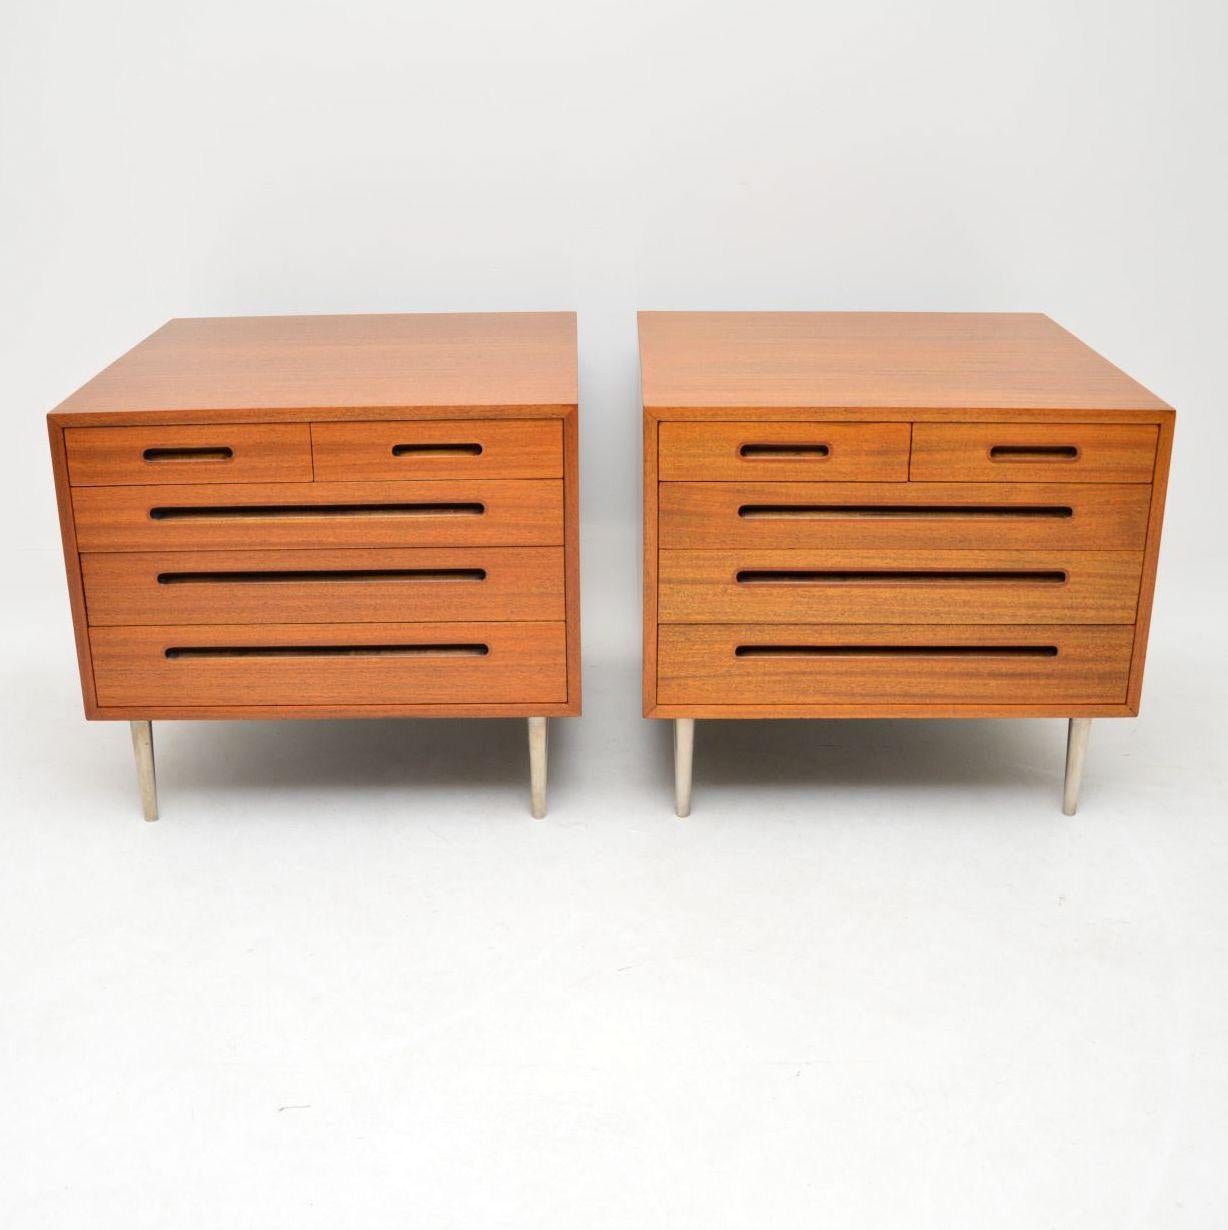 Une magnifique paire de coffres vintage, ceux-ci ont été fabriqués aux Etats-Unis par Dunbar furniture, ils ont été dessinés par Edward Wormley.

Edward Wormley a été l'un des principaux pionniers du design moderne du milieu du siècle en Amérique.